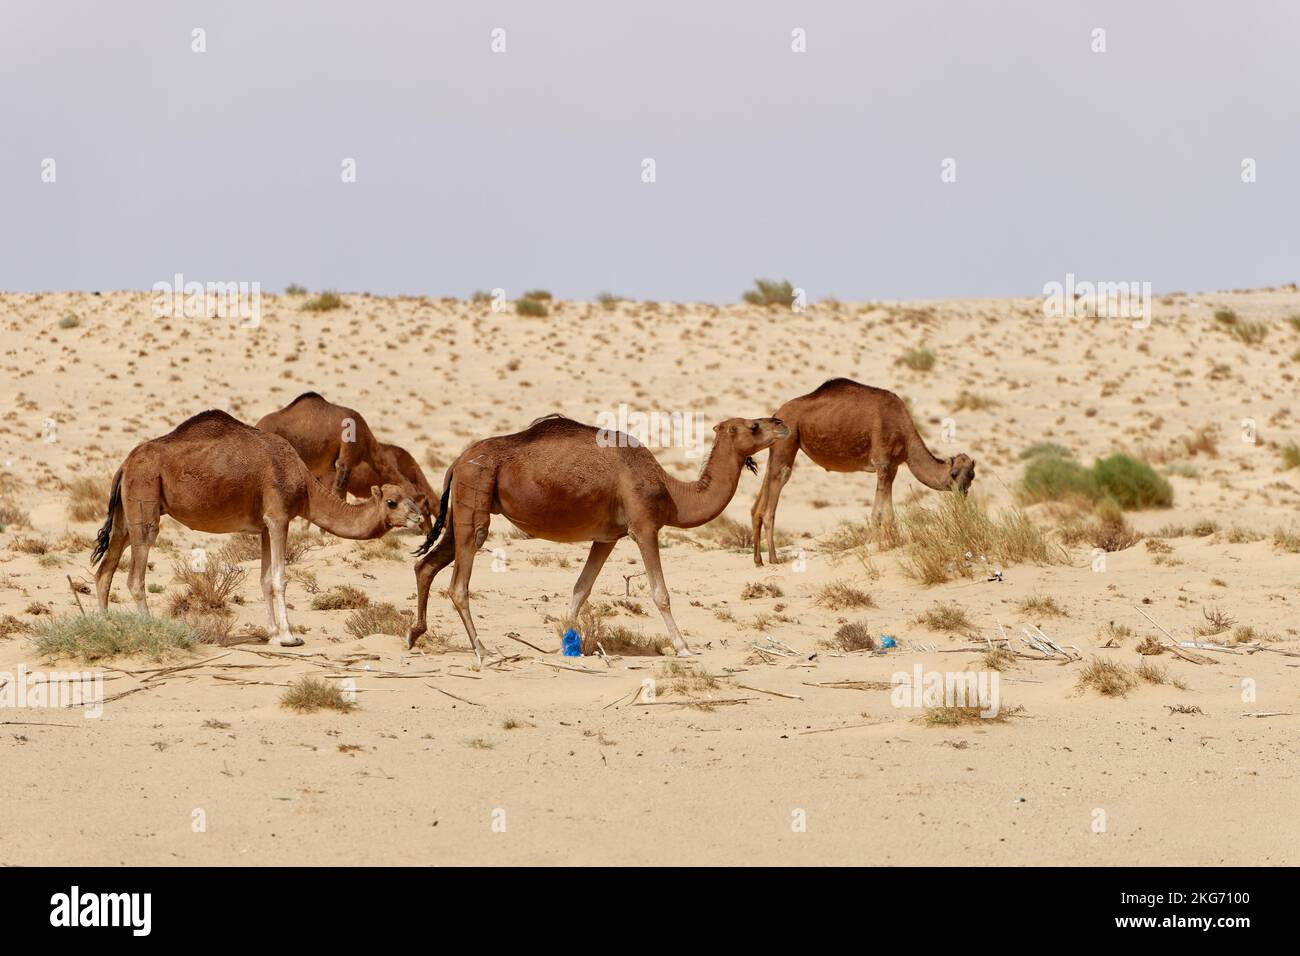 Un groupe de chameaux dans le désert. Animaux sauvages dans leur habitat naturel. Paysages sauvages et arides. Voyage et tourisme destination dans le désert. Banque D'Images